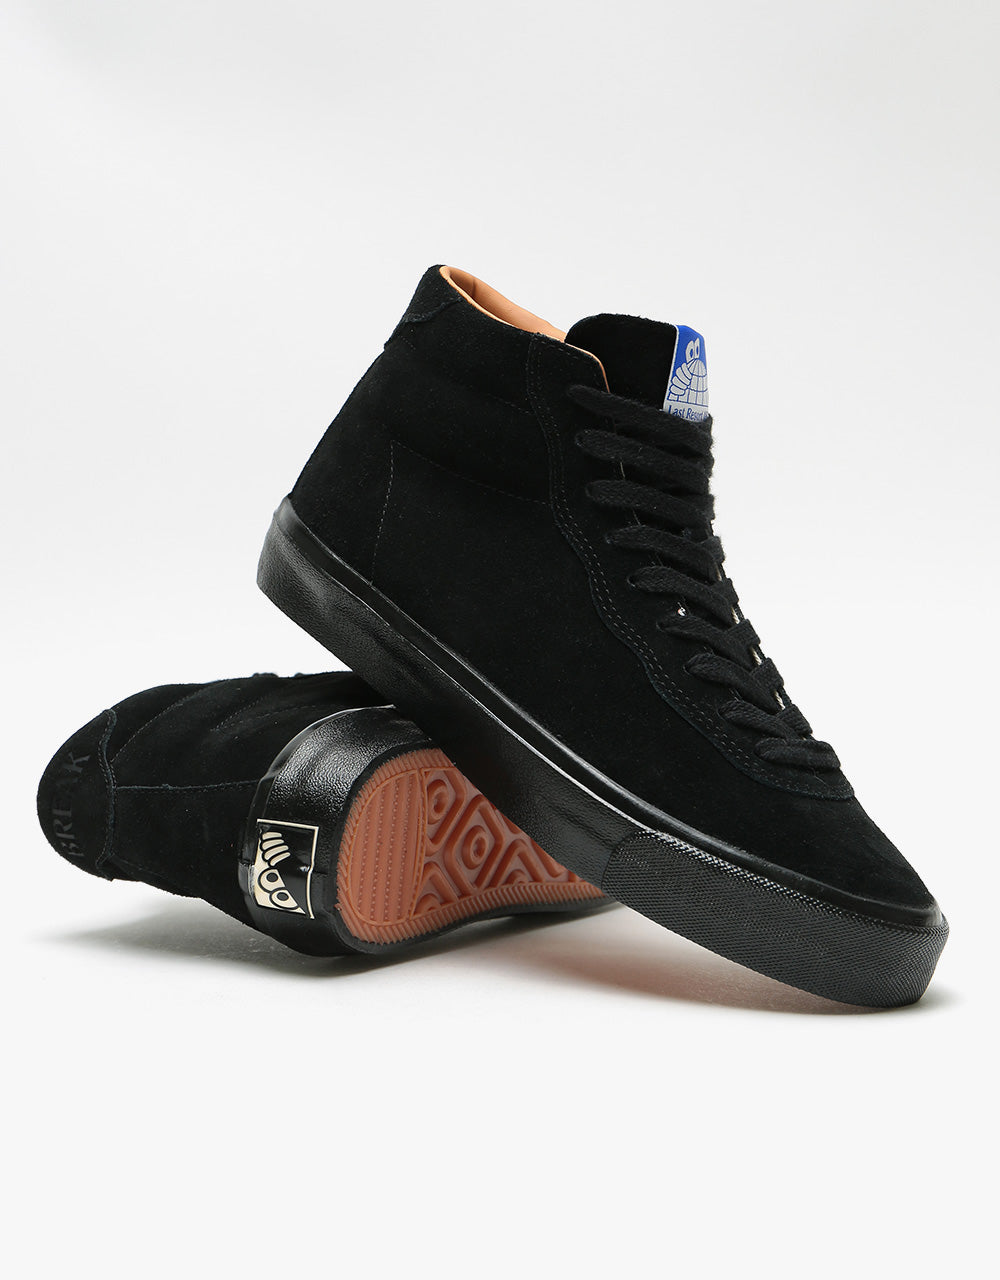 Last Resort AB VM001 Suede Hi Skate Shoes - Black/Black